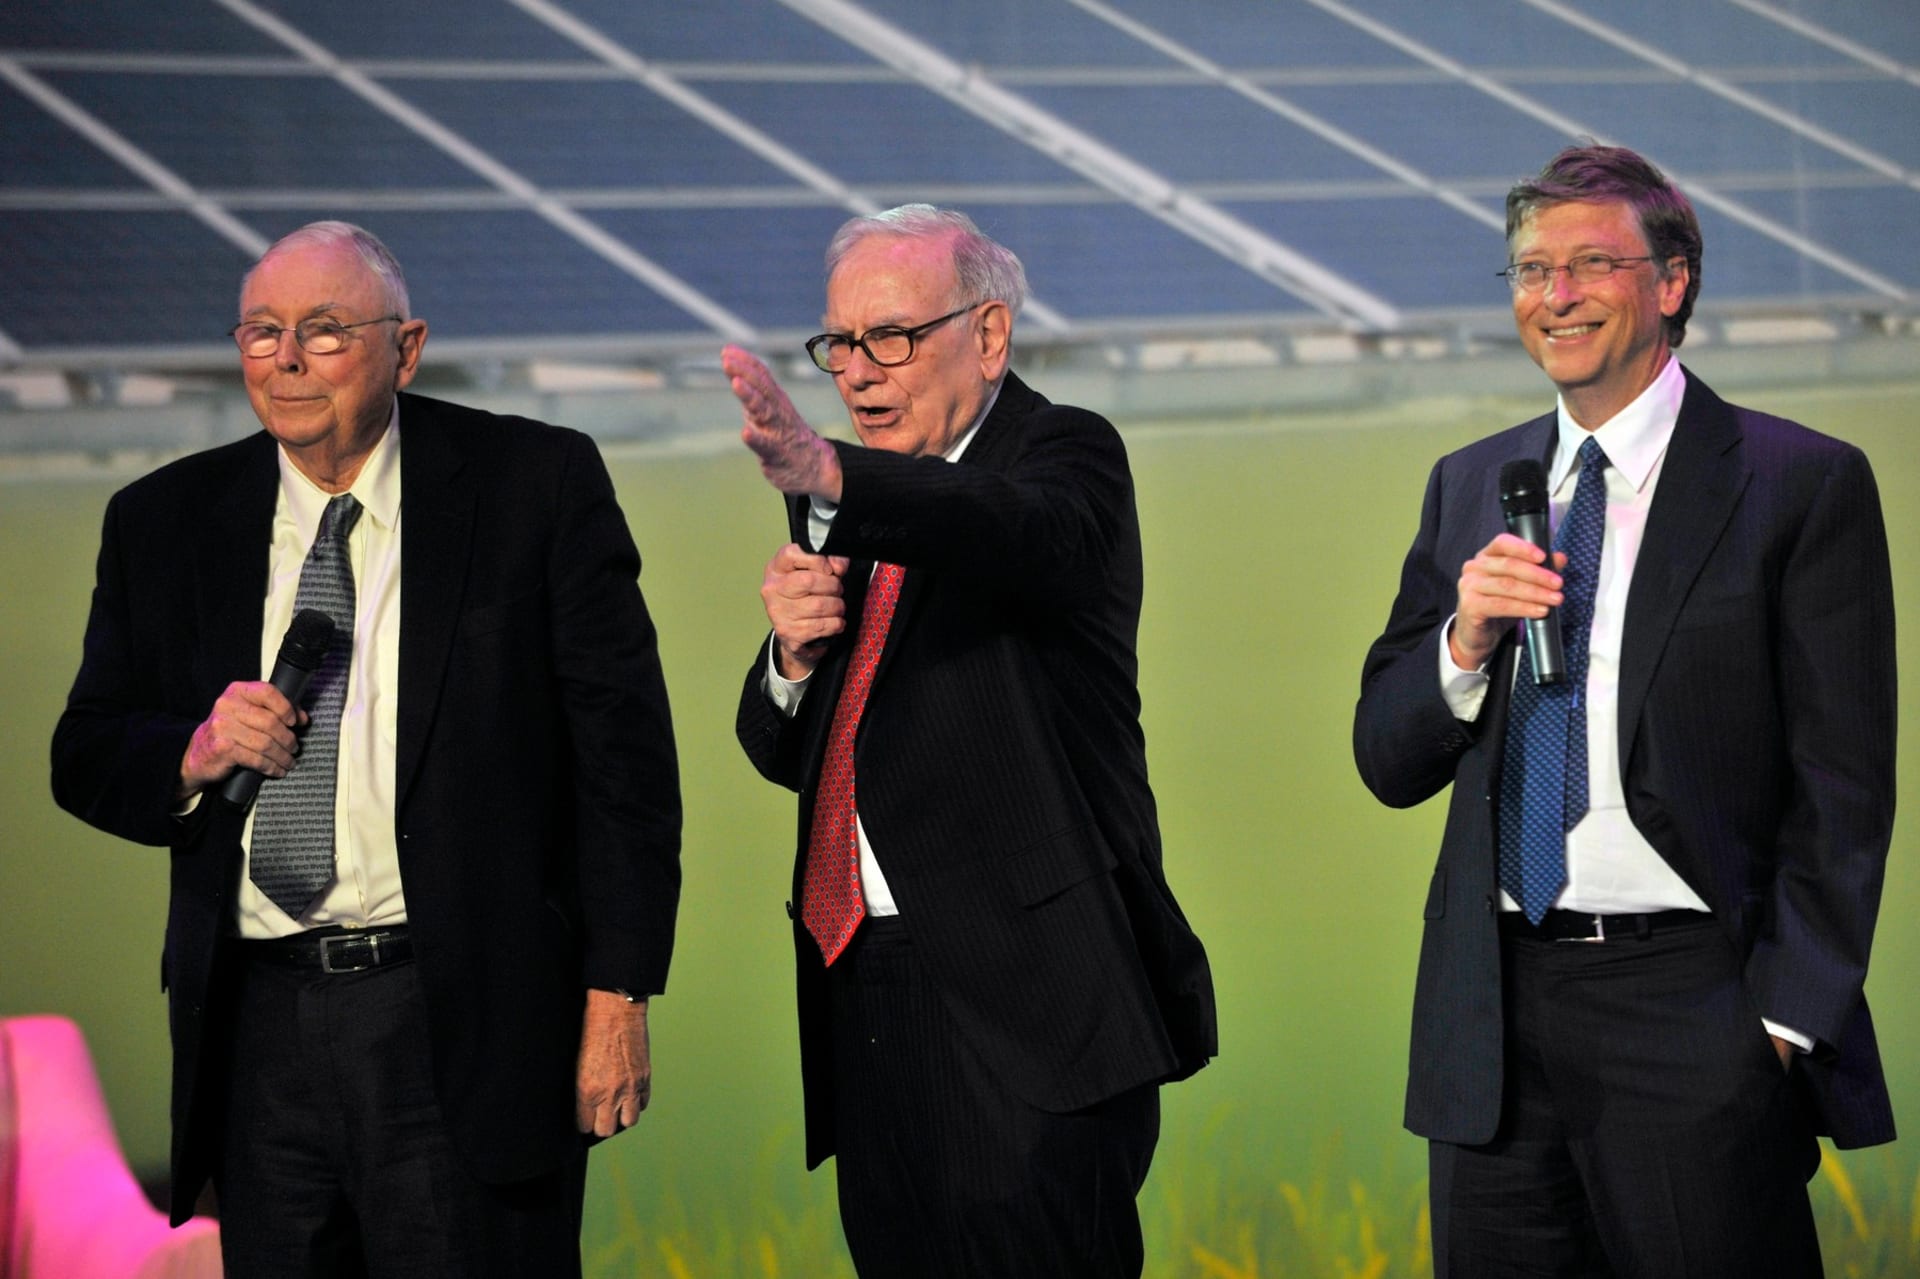 Charlie Munger (vlevo) je společně s Warrenem Buffettem (uprostřed) tvůrcem přeměny původně textilní společnosti Berkshire Hathaway na jednu z nejúspěšnějších investičních společností planety. Významným akcionářem této korporace je i Bill Gates (vpravo).